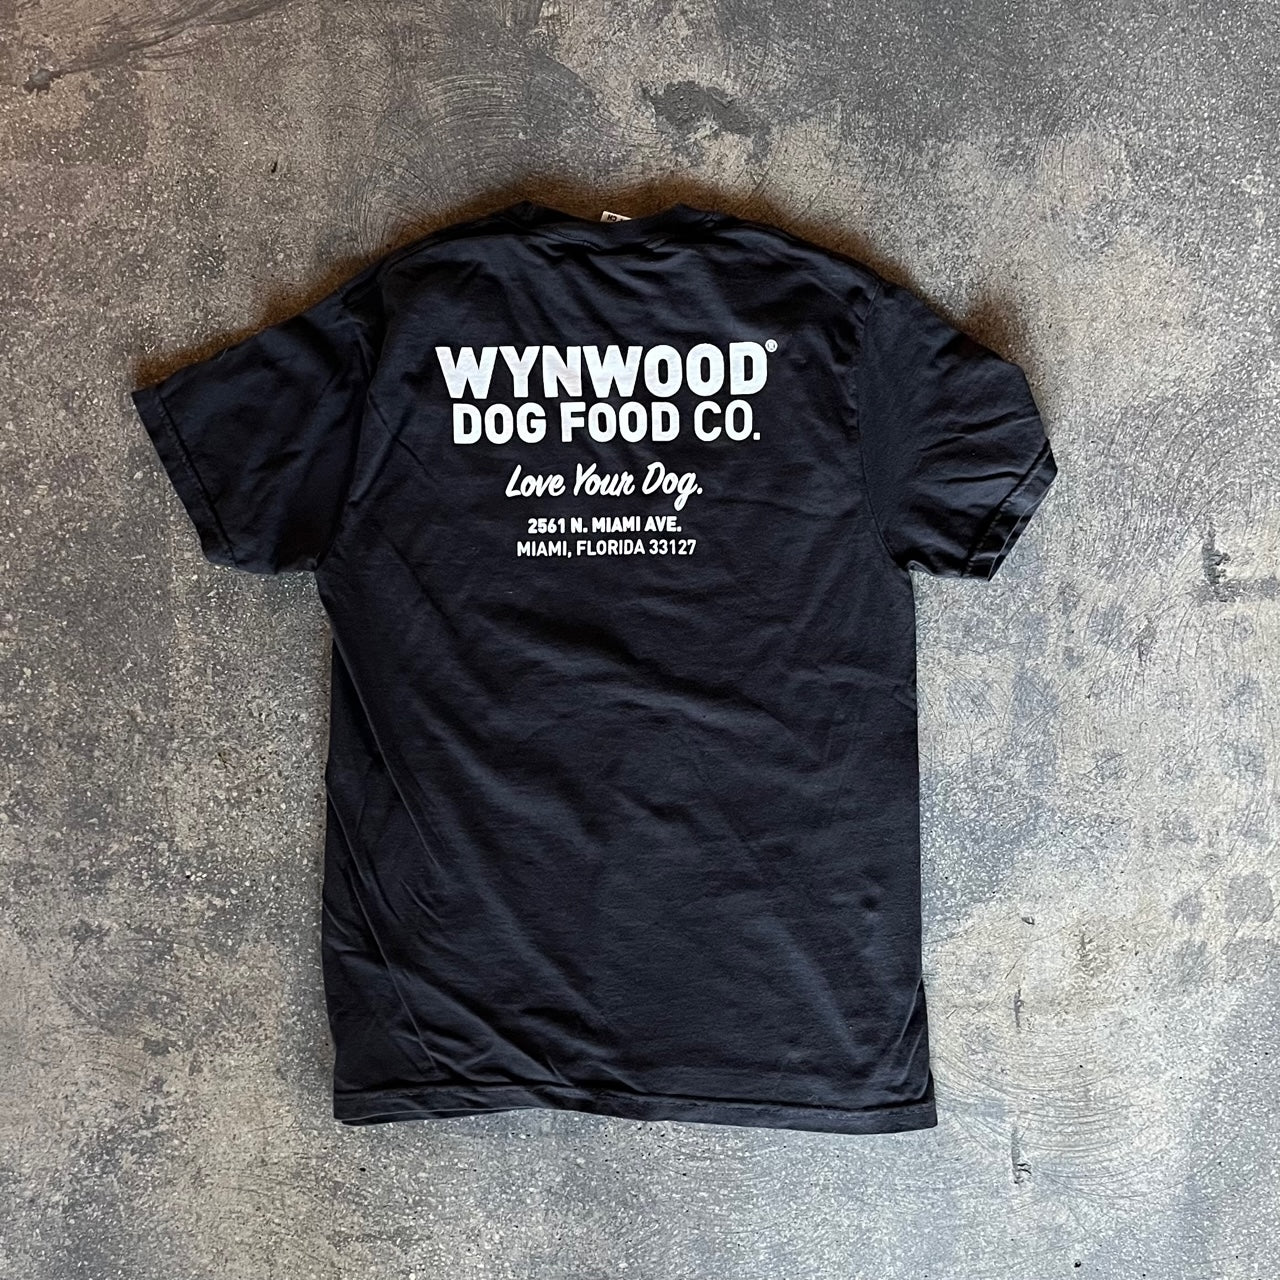 The O.G. WDFC Tee - Wynwood Dog Food Co.